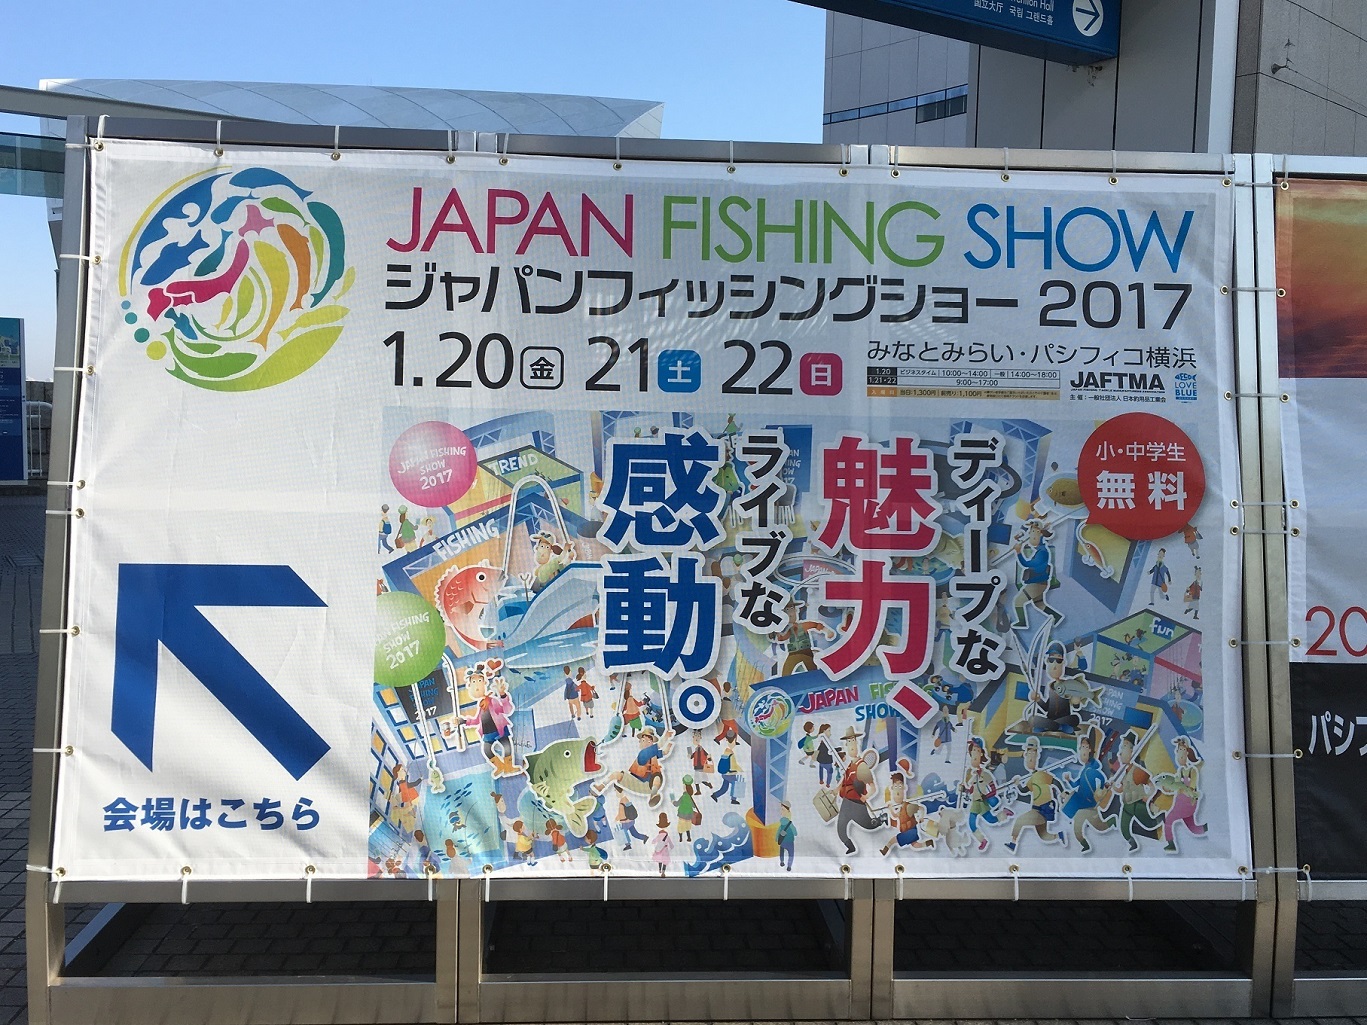 2017年01月22日 みなとみらい, パシフィコ横浜, ジャパンフィッシングショー